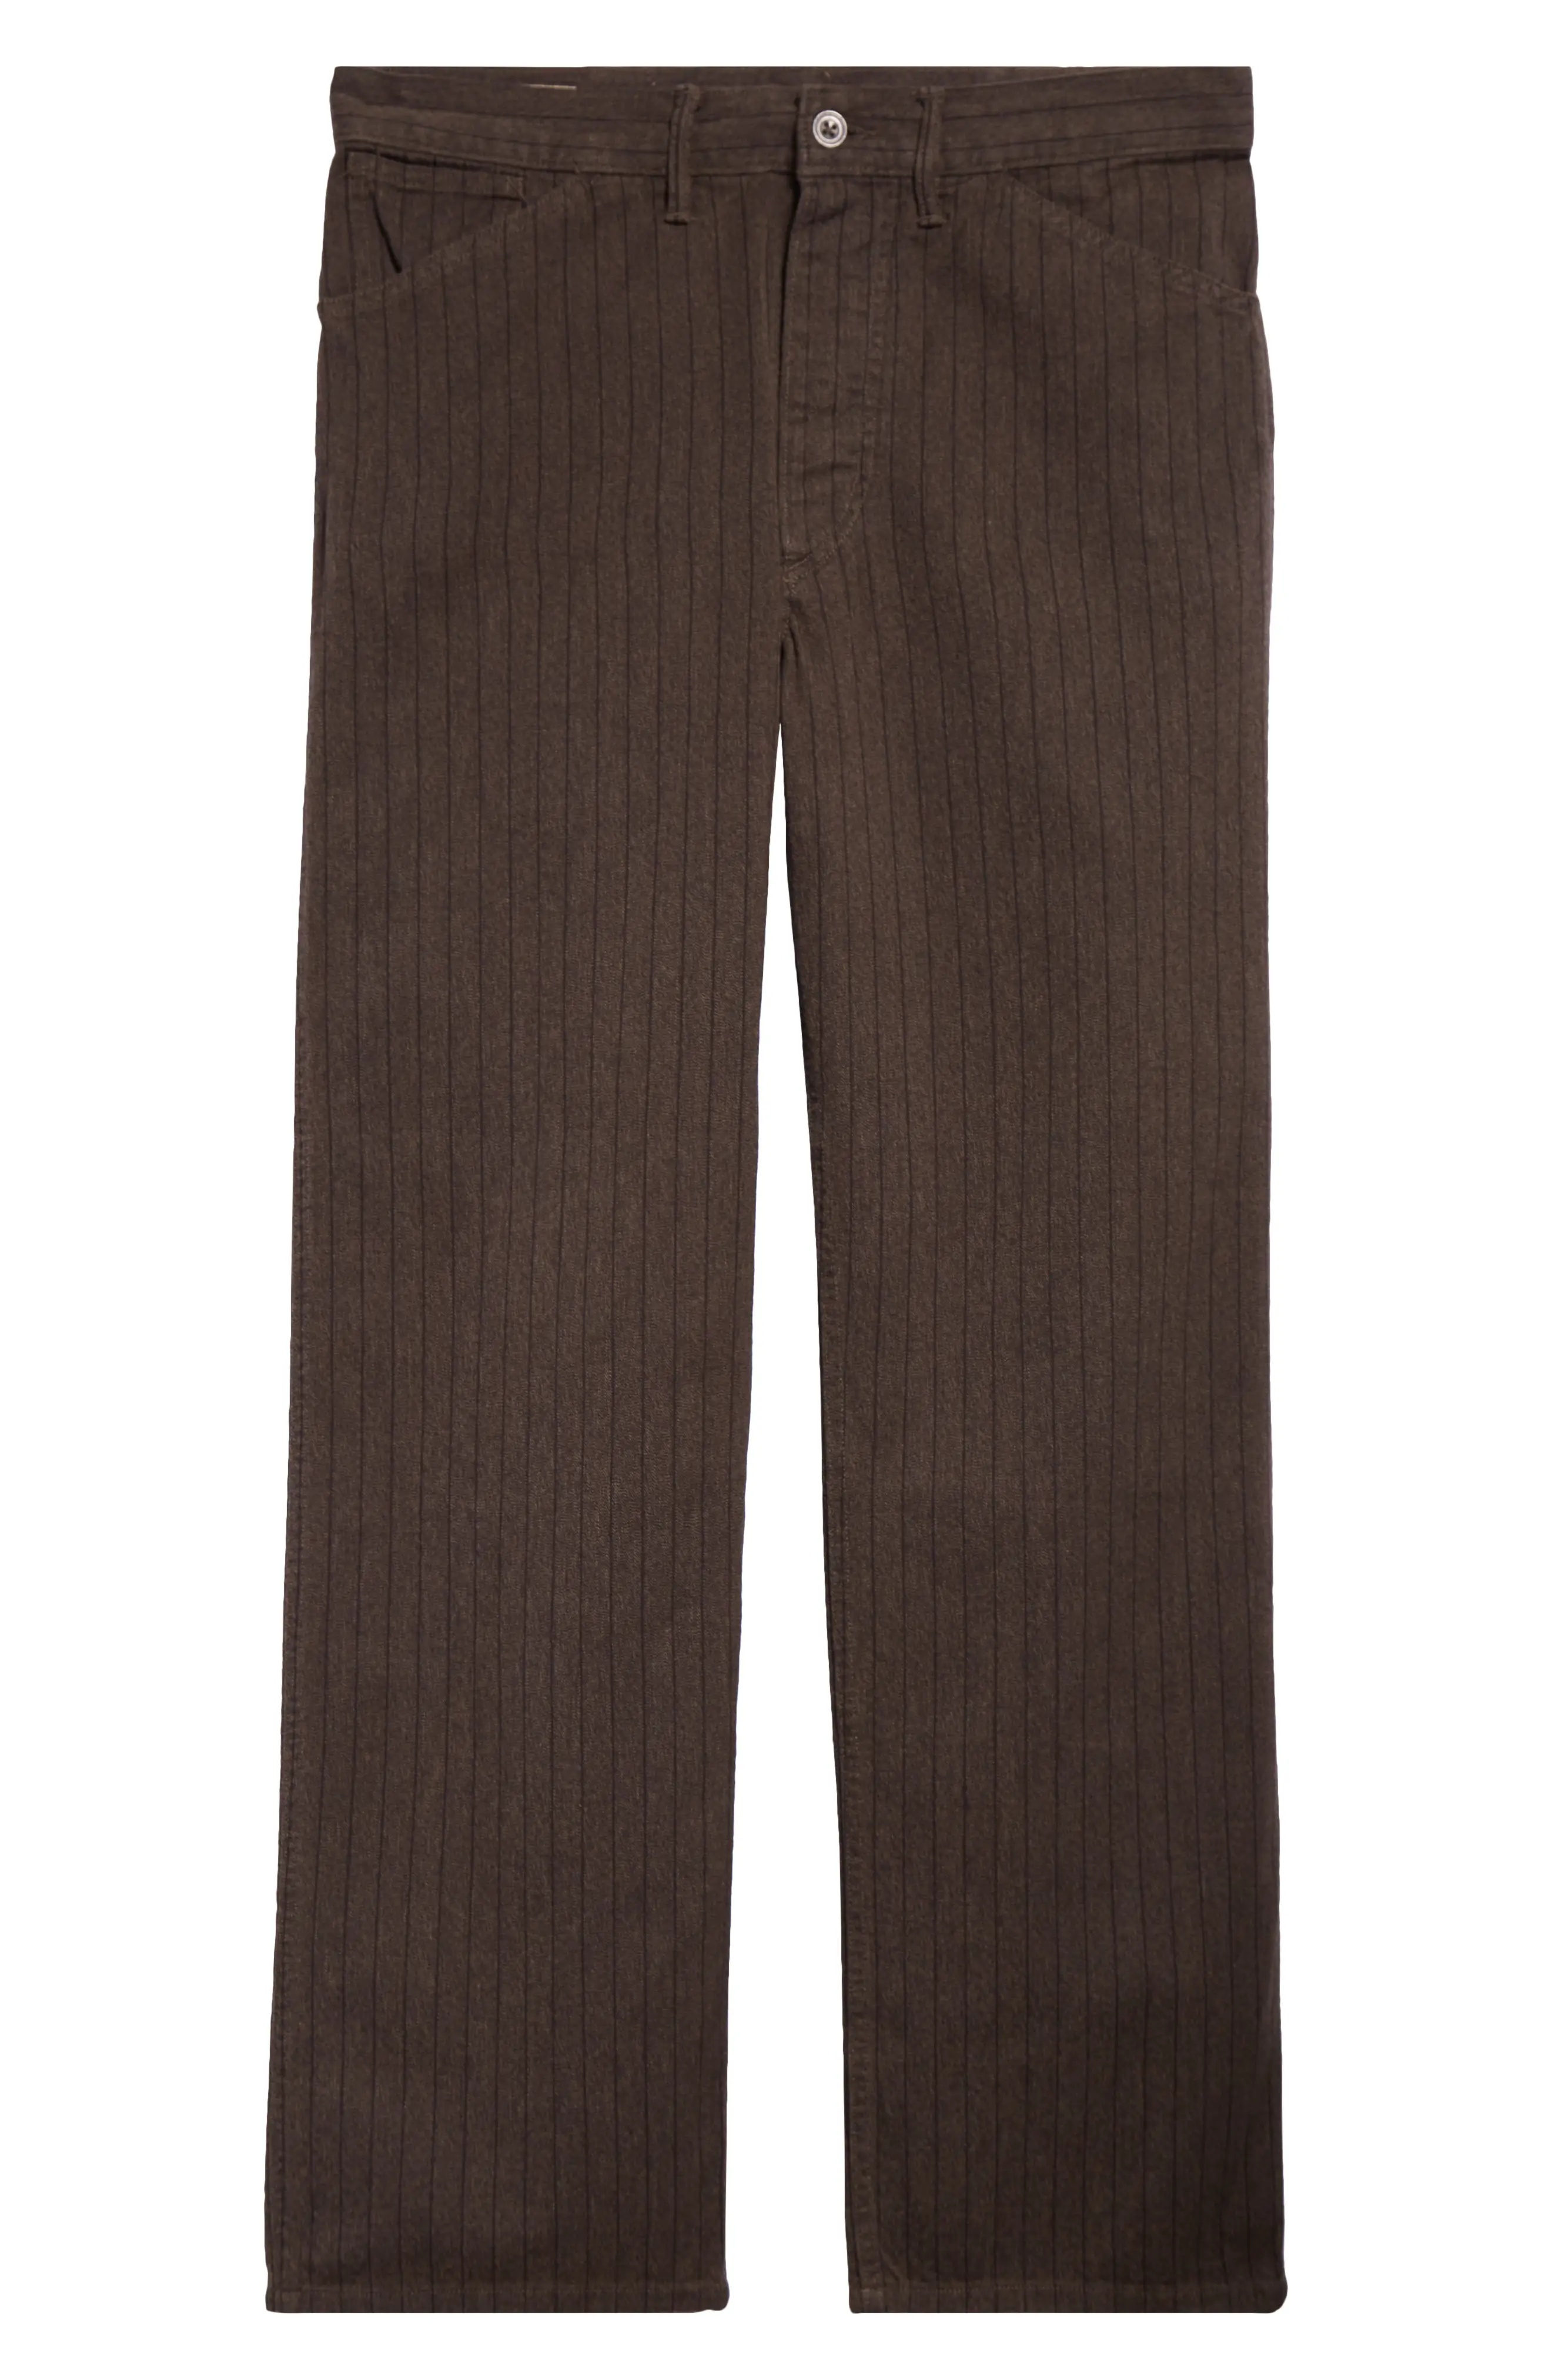 Stripe Jaspé Twill Field Pants in Brown/Black - 6